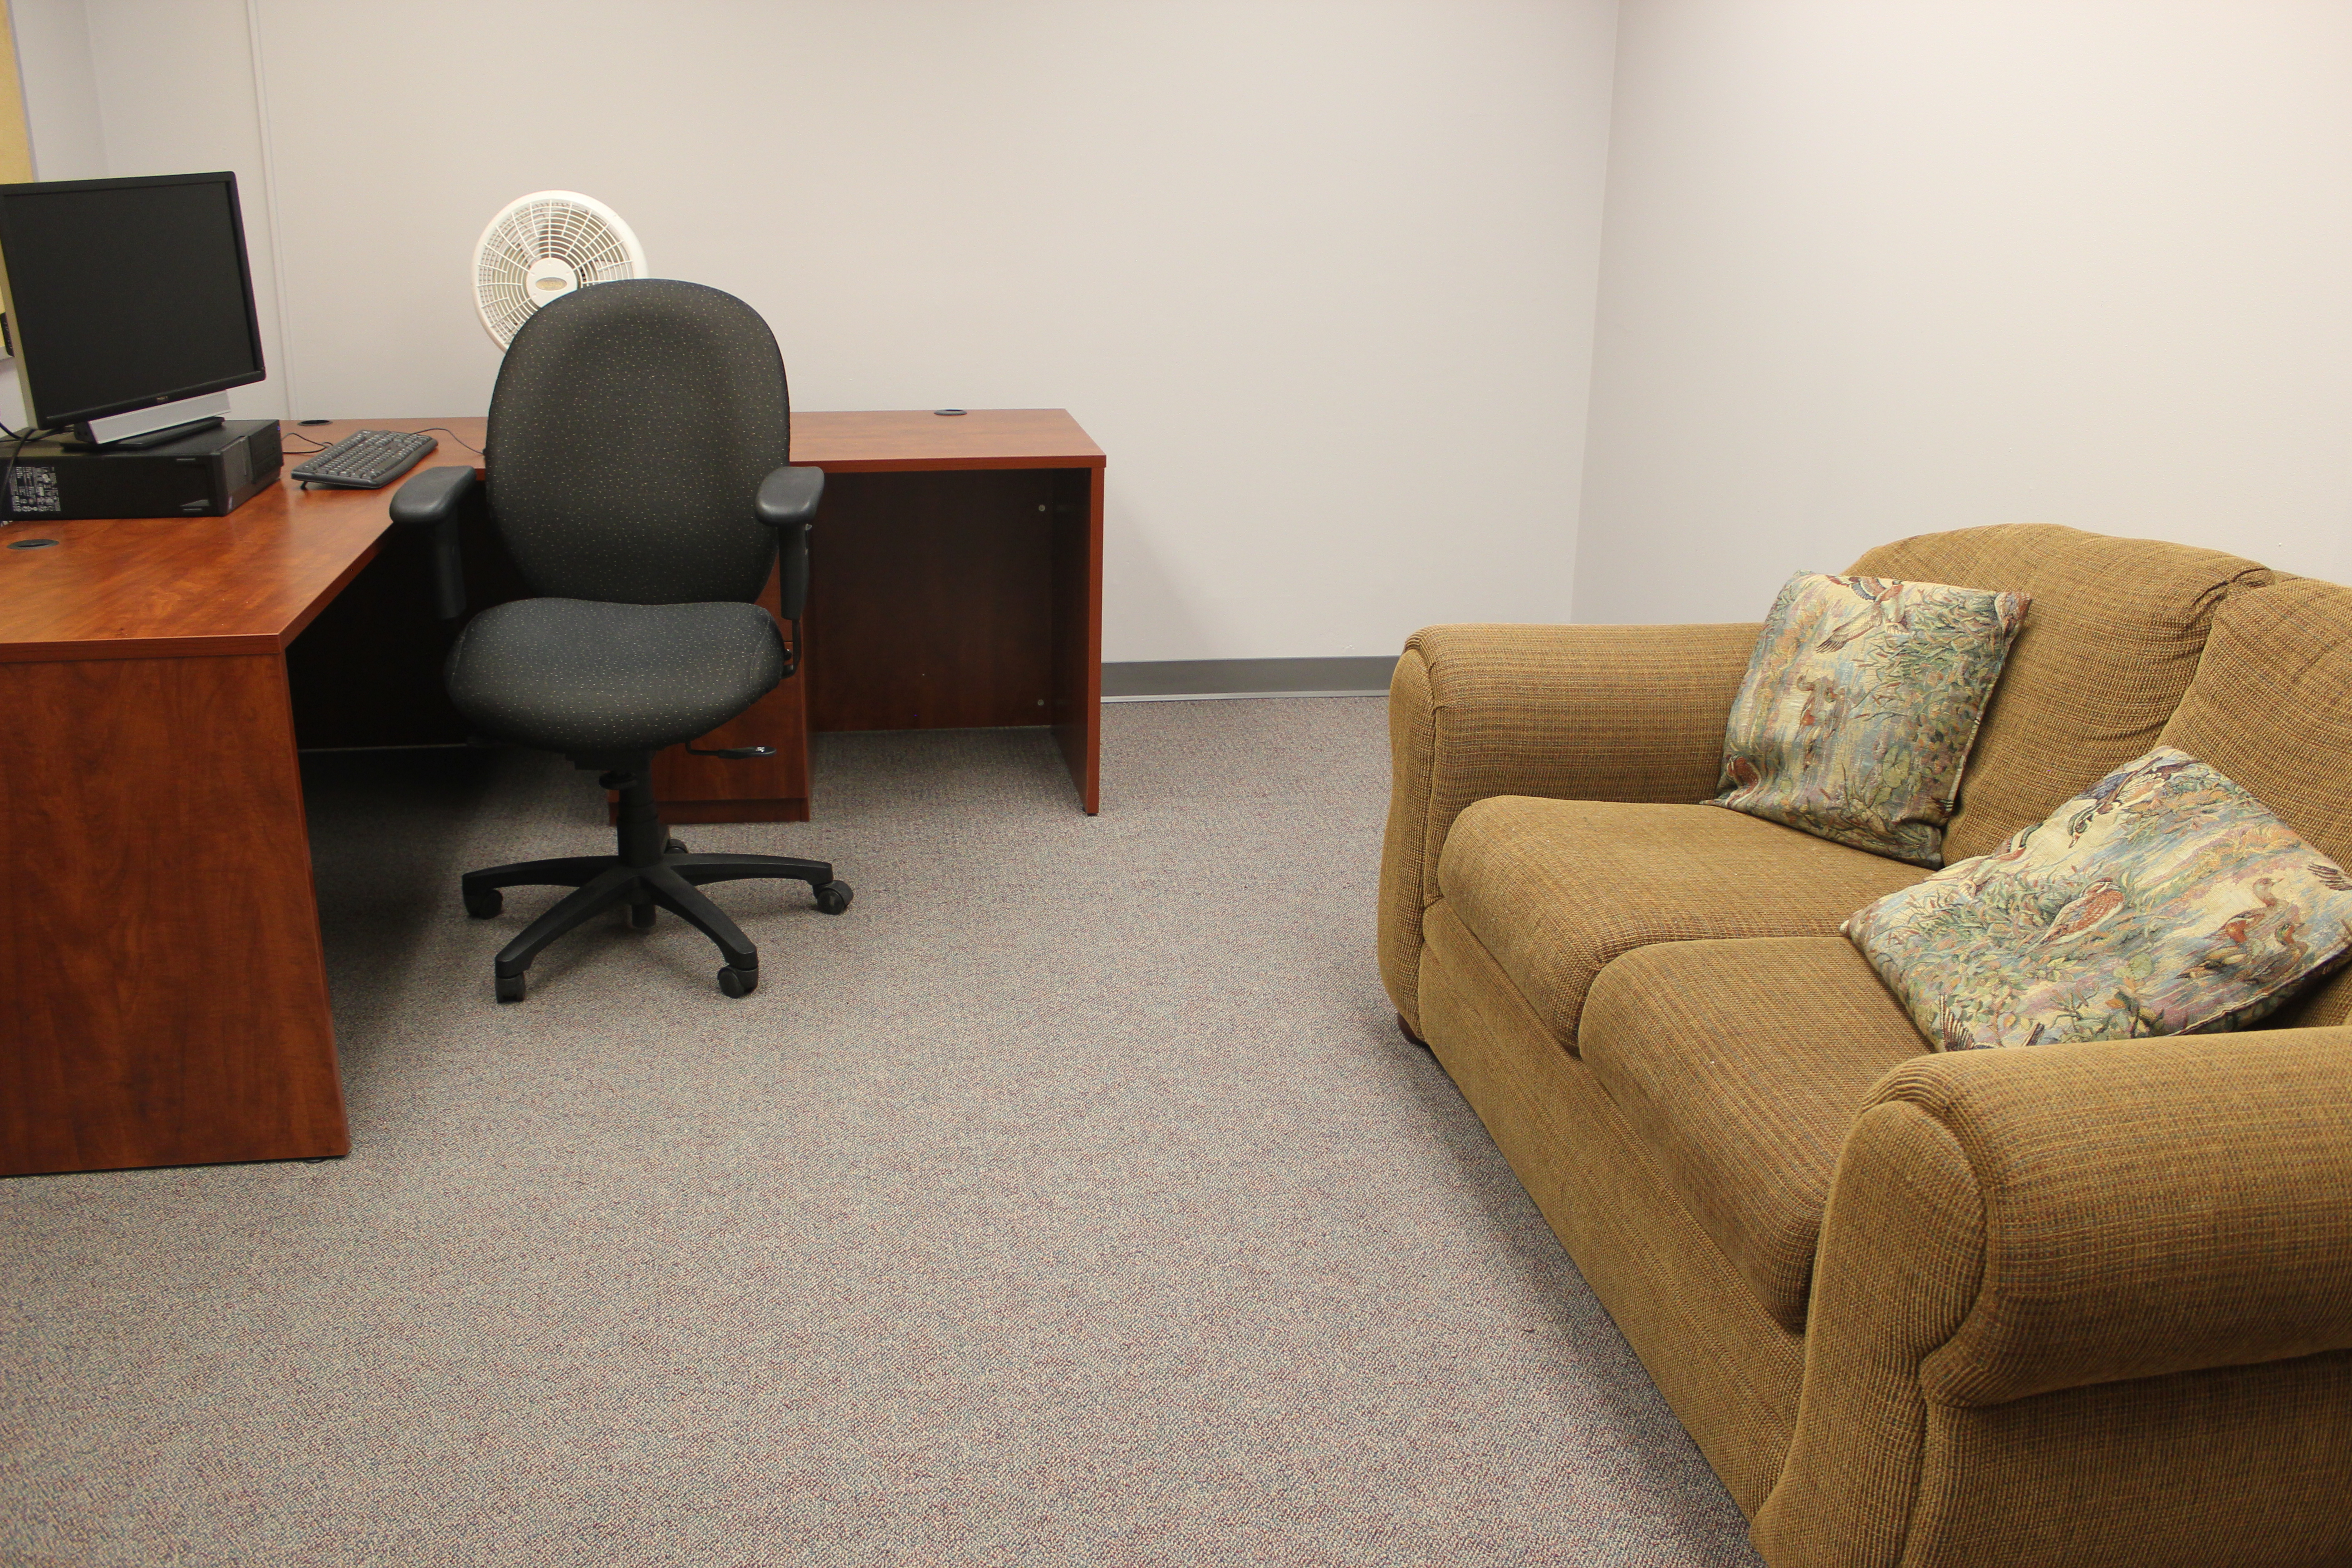 faculty-study-room-interior.jpg